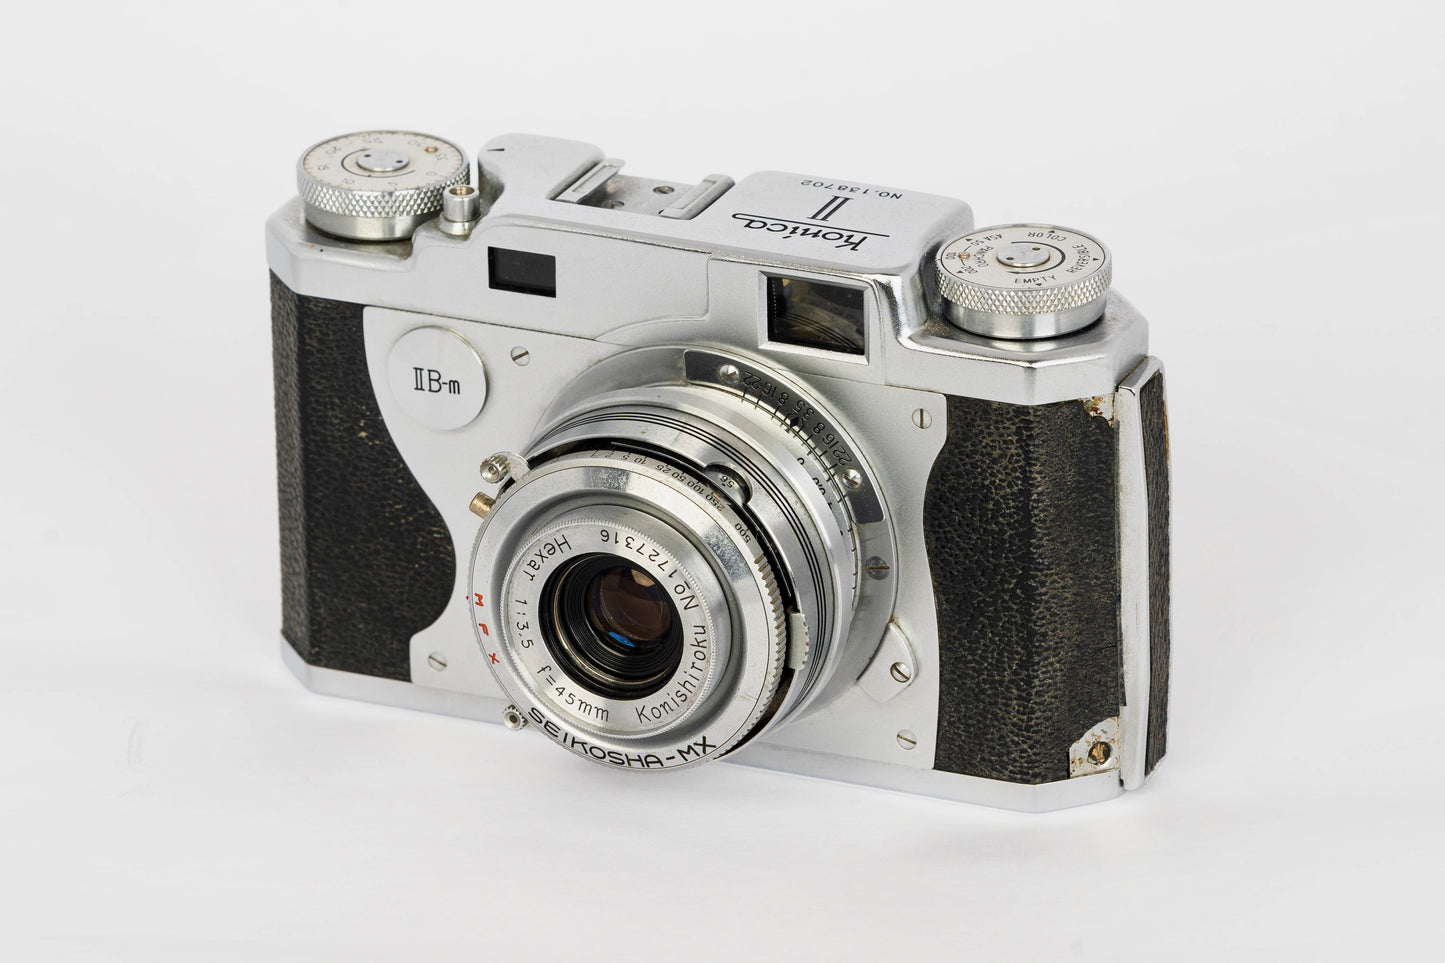 Konica II B-m Rangefinder 35mm Film Camera w/ Konishiroku Hexar 45mm f3.5 Lens